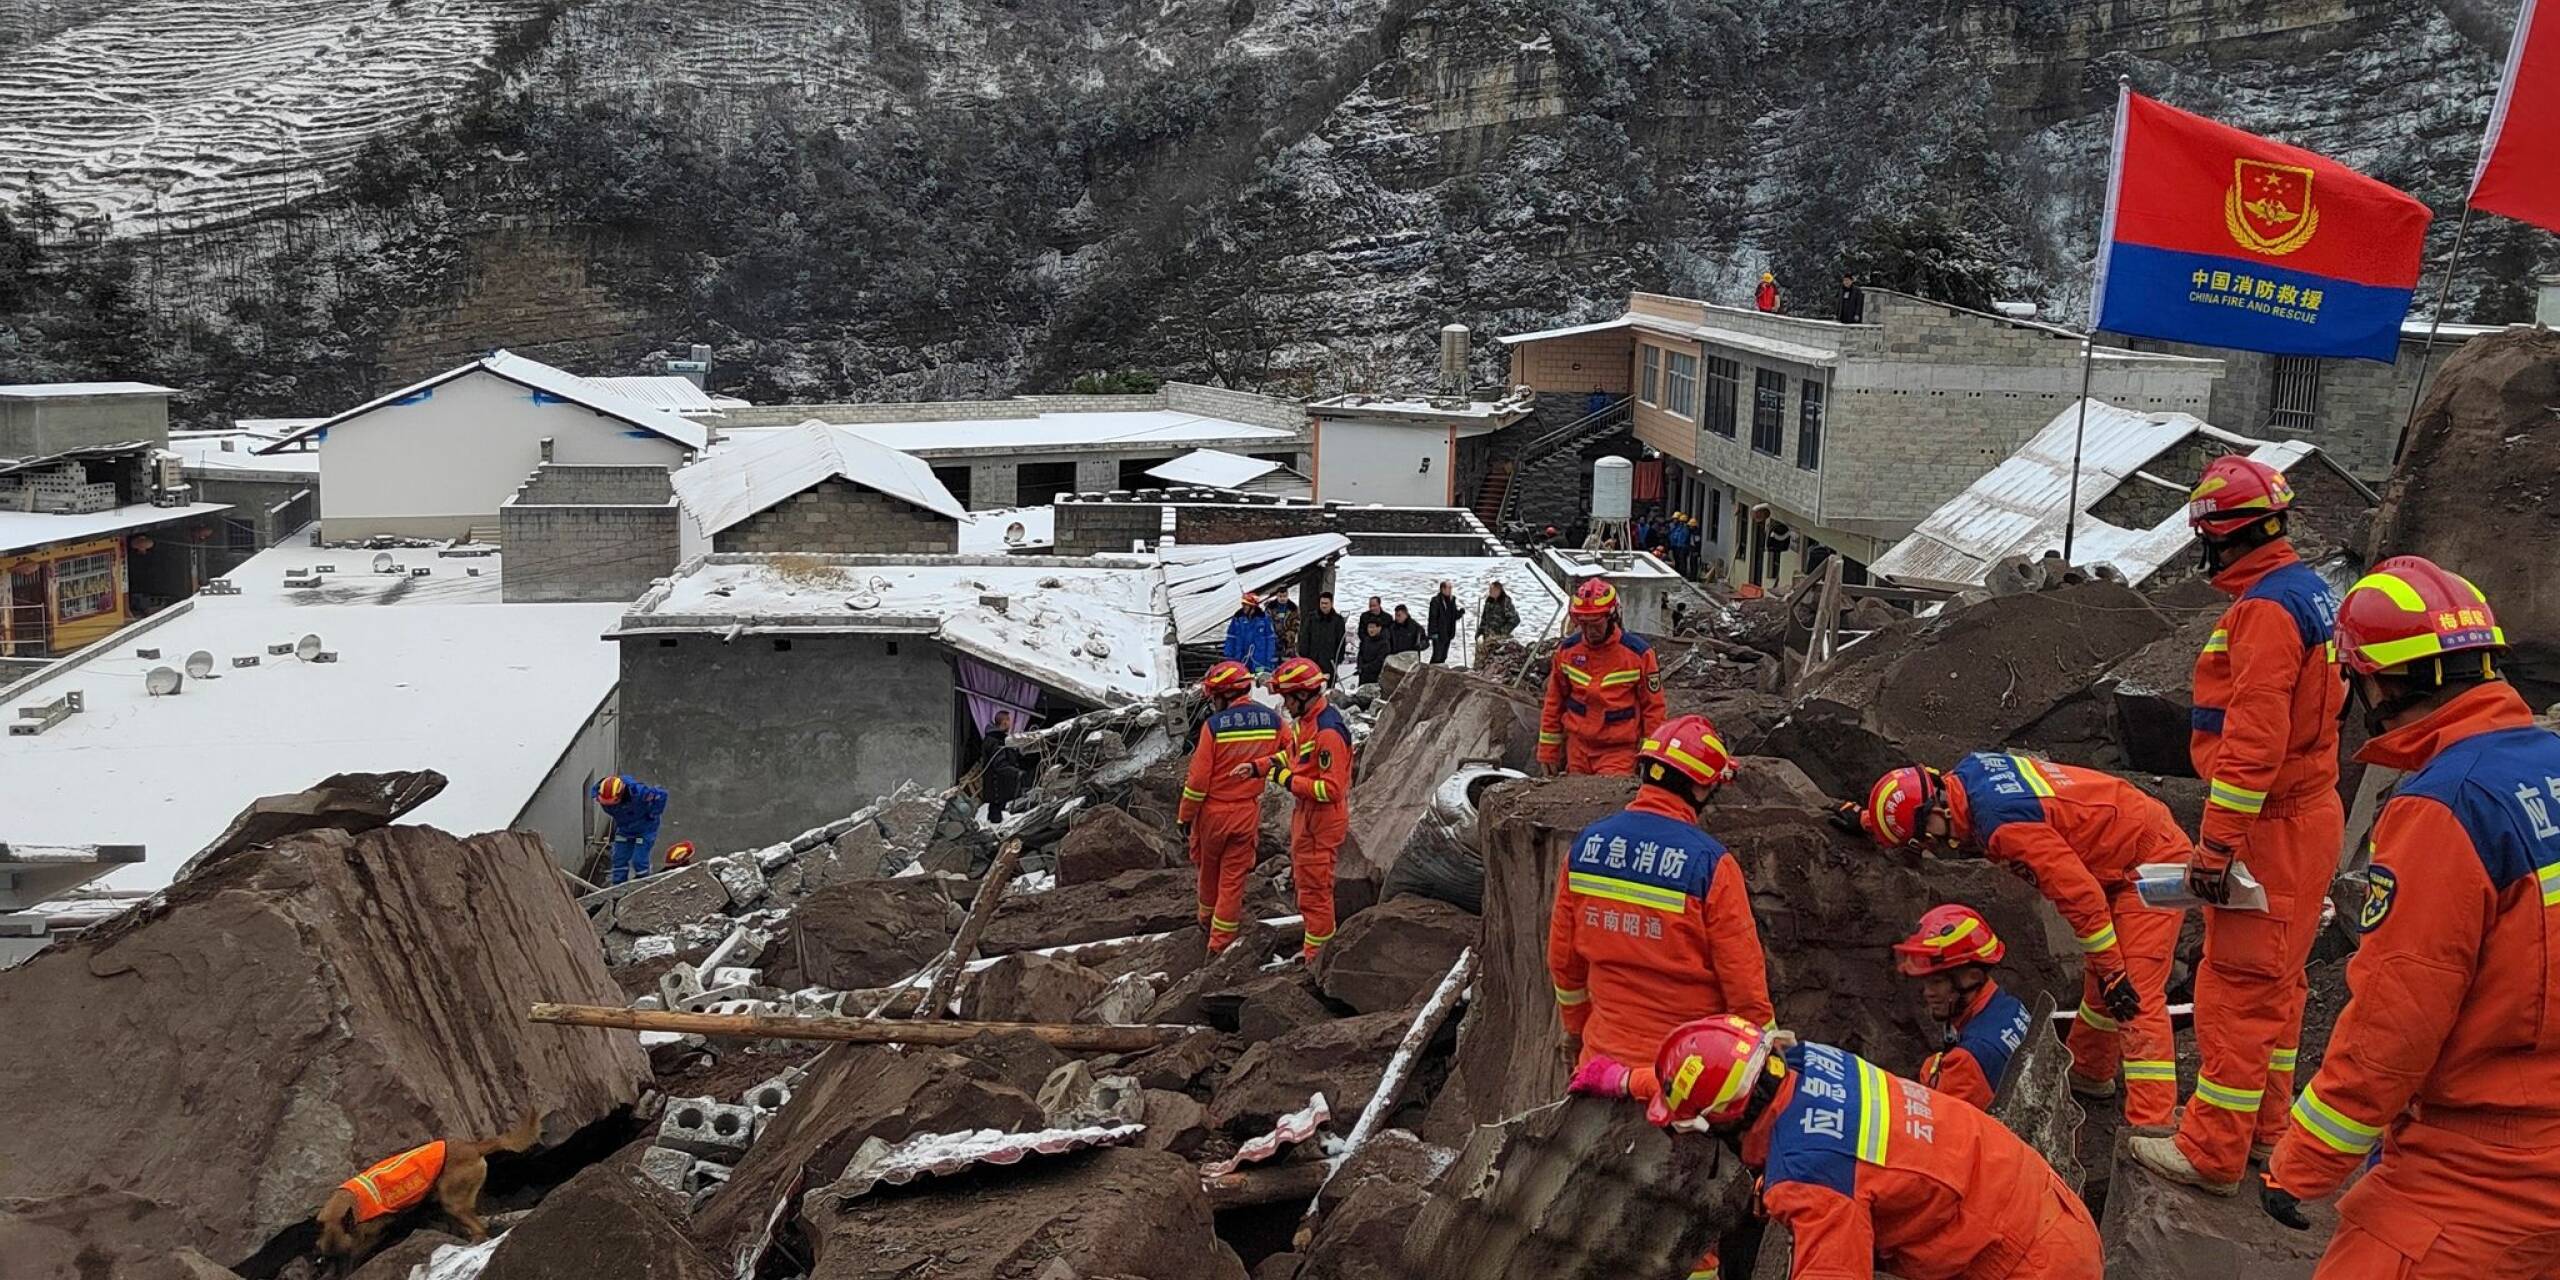 Am frühen Morgen hat sich in der südwestchinesischen Provinz Yunnan ein Erdrutsch ereignet. Seitdem suchen Rettungskräfte nach rund 40 verschütteten Menschen.